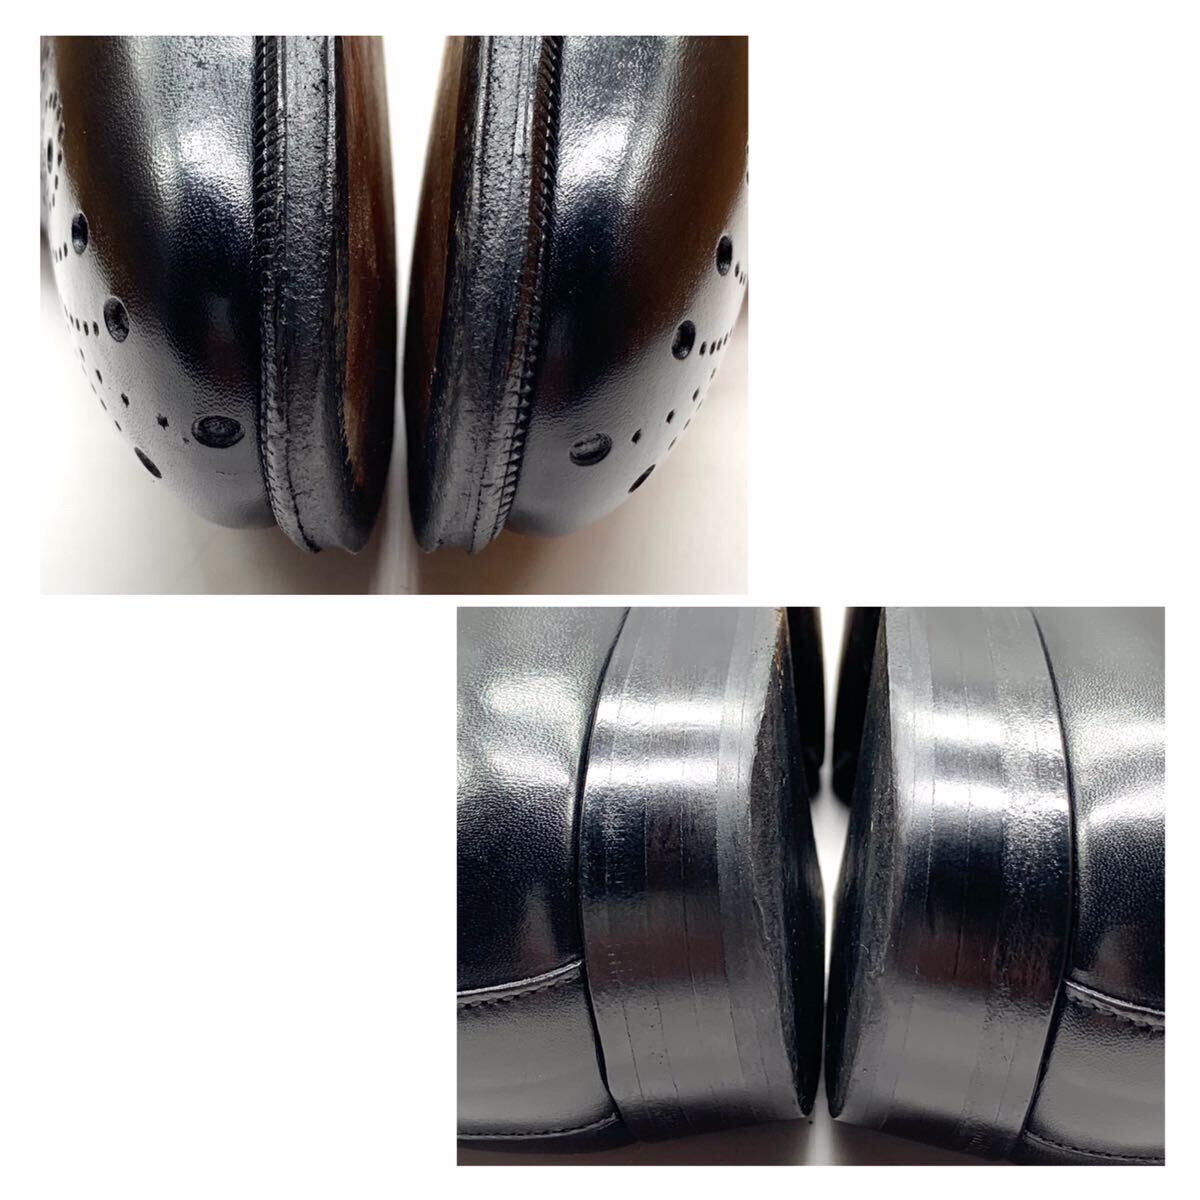 di colletti [ディコレッティ] ドレスシューズ ウイングチップ シングルモンクストラップ レザー ブラック 黒 42 27cm 革靴 イタリア製